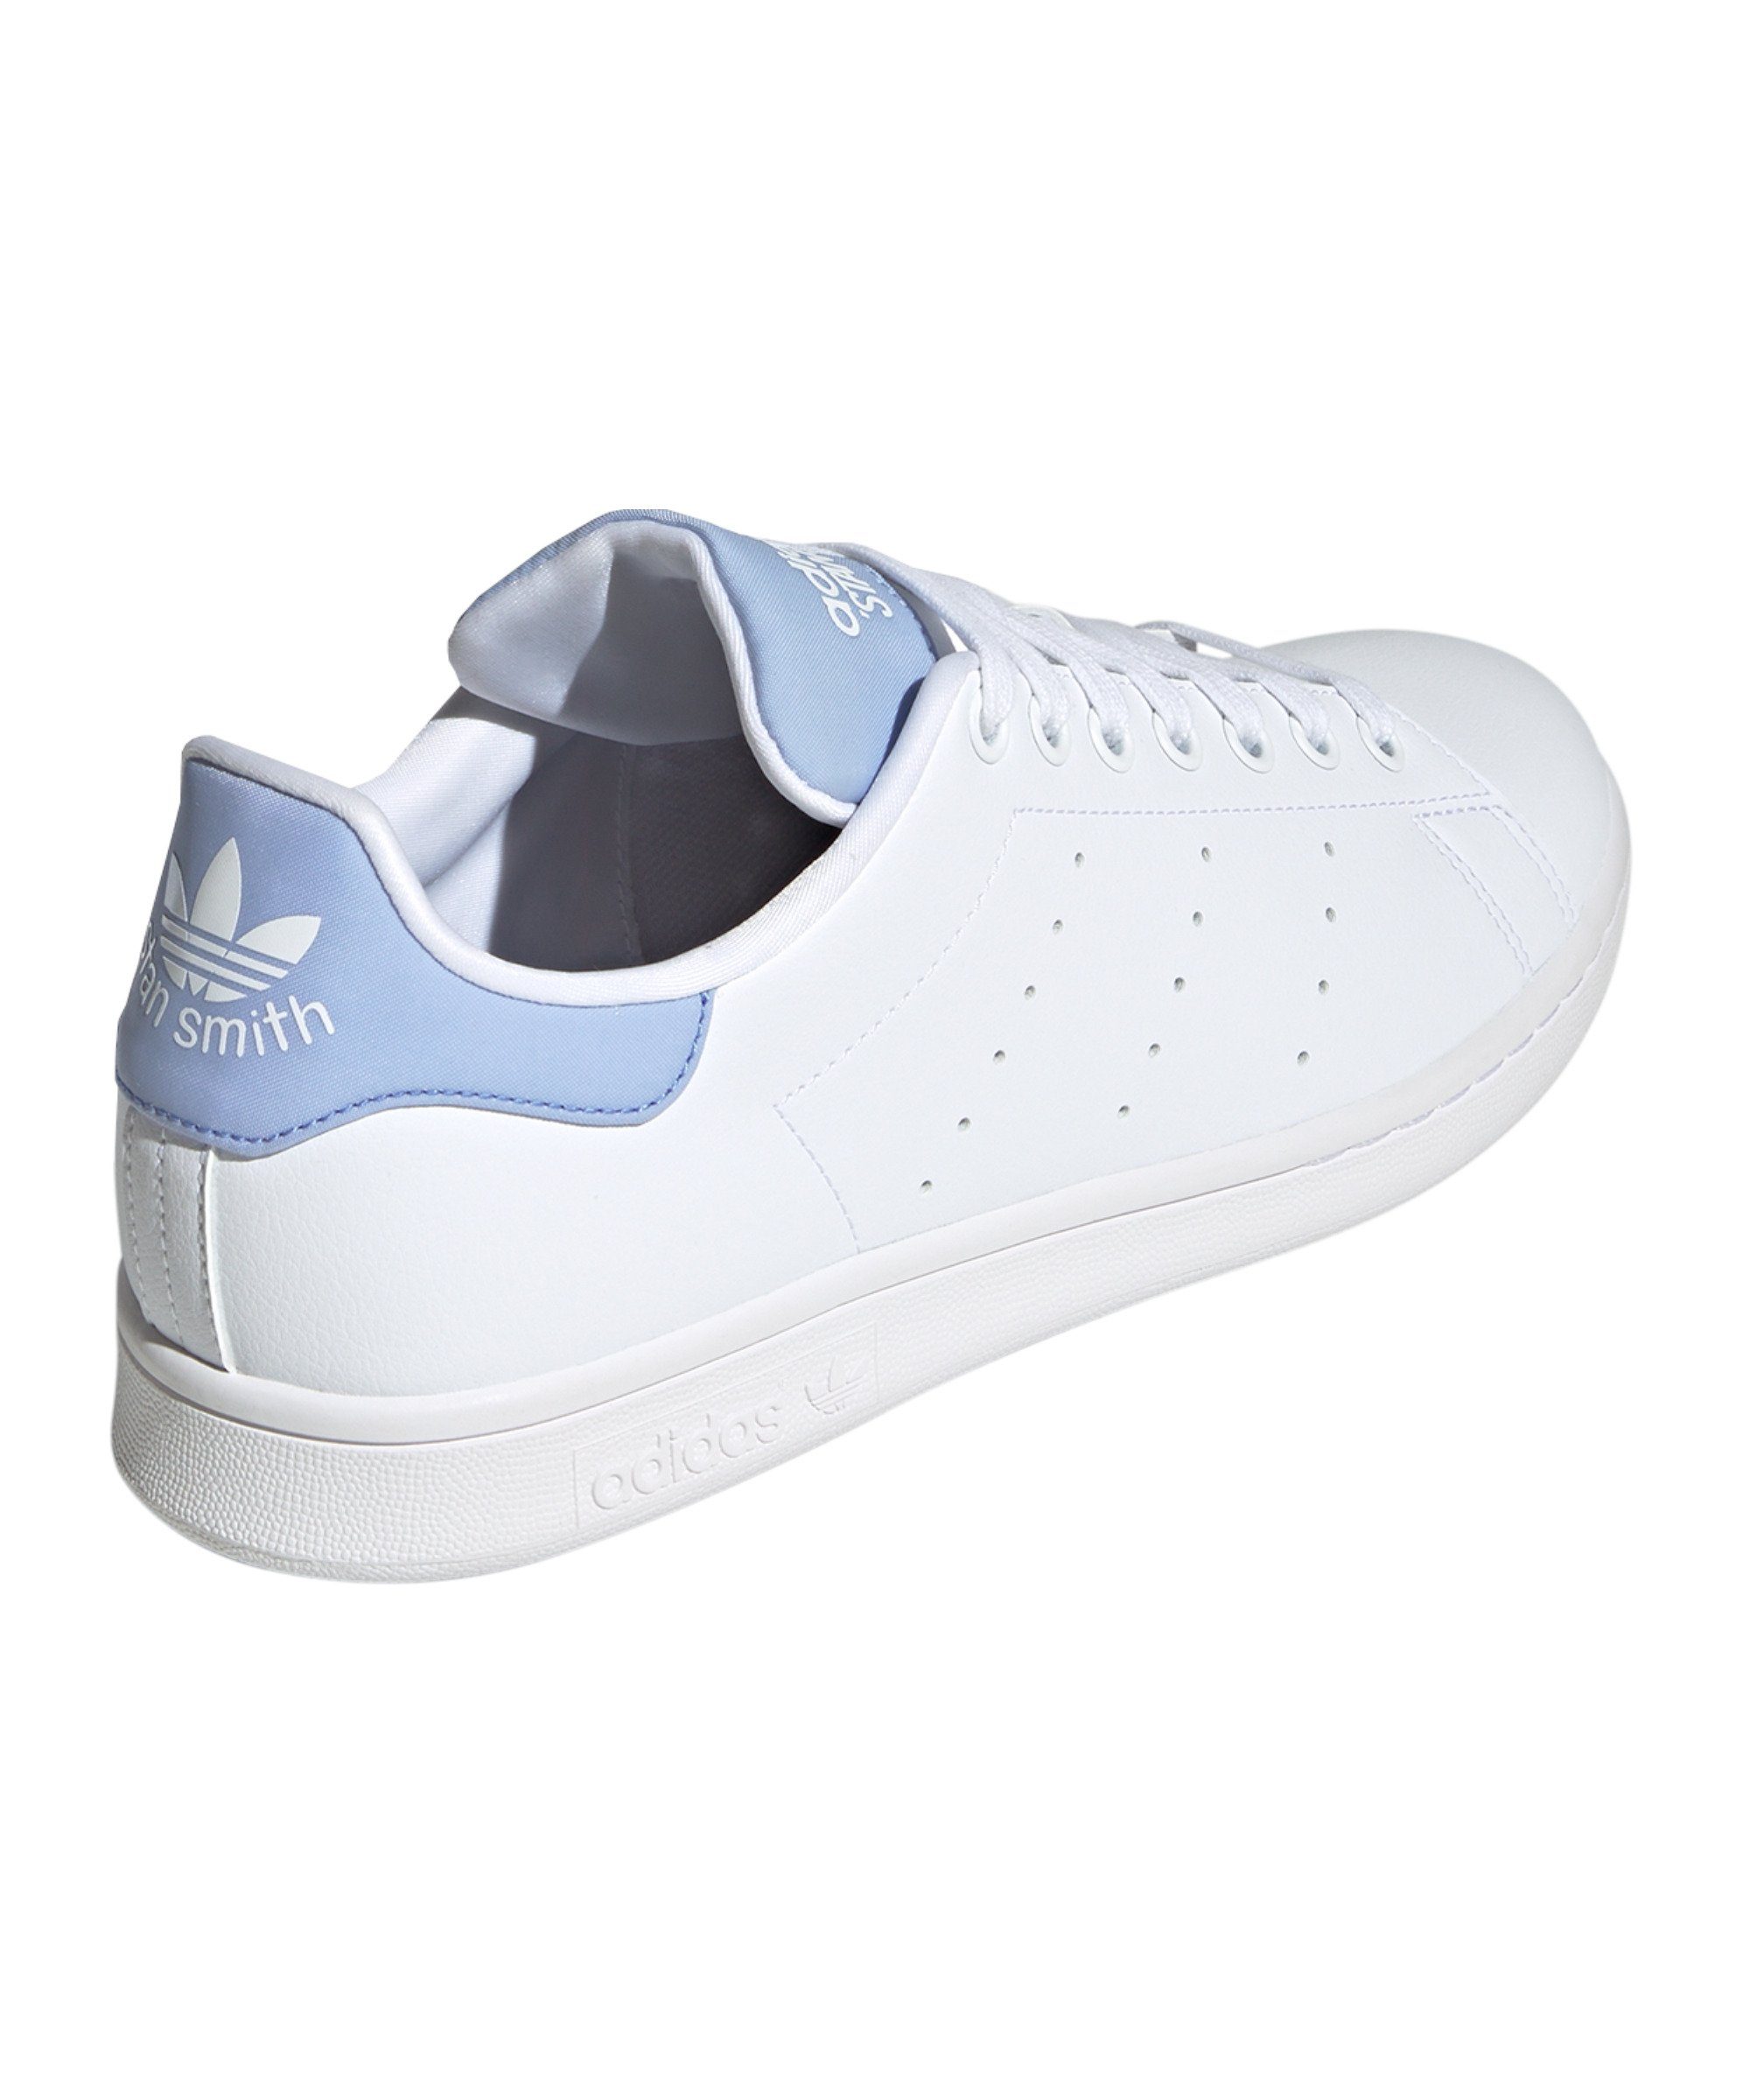 Sneaker weissweissblau adidas Originals Smith Stan